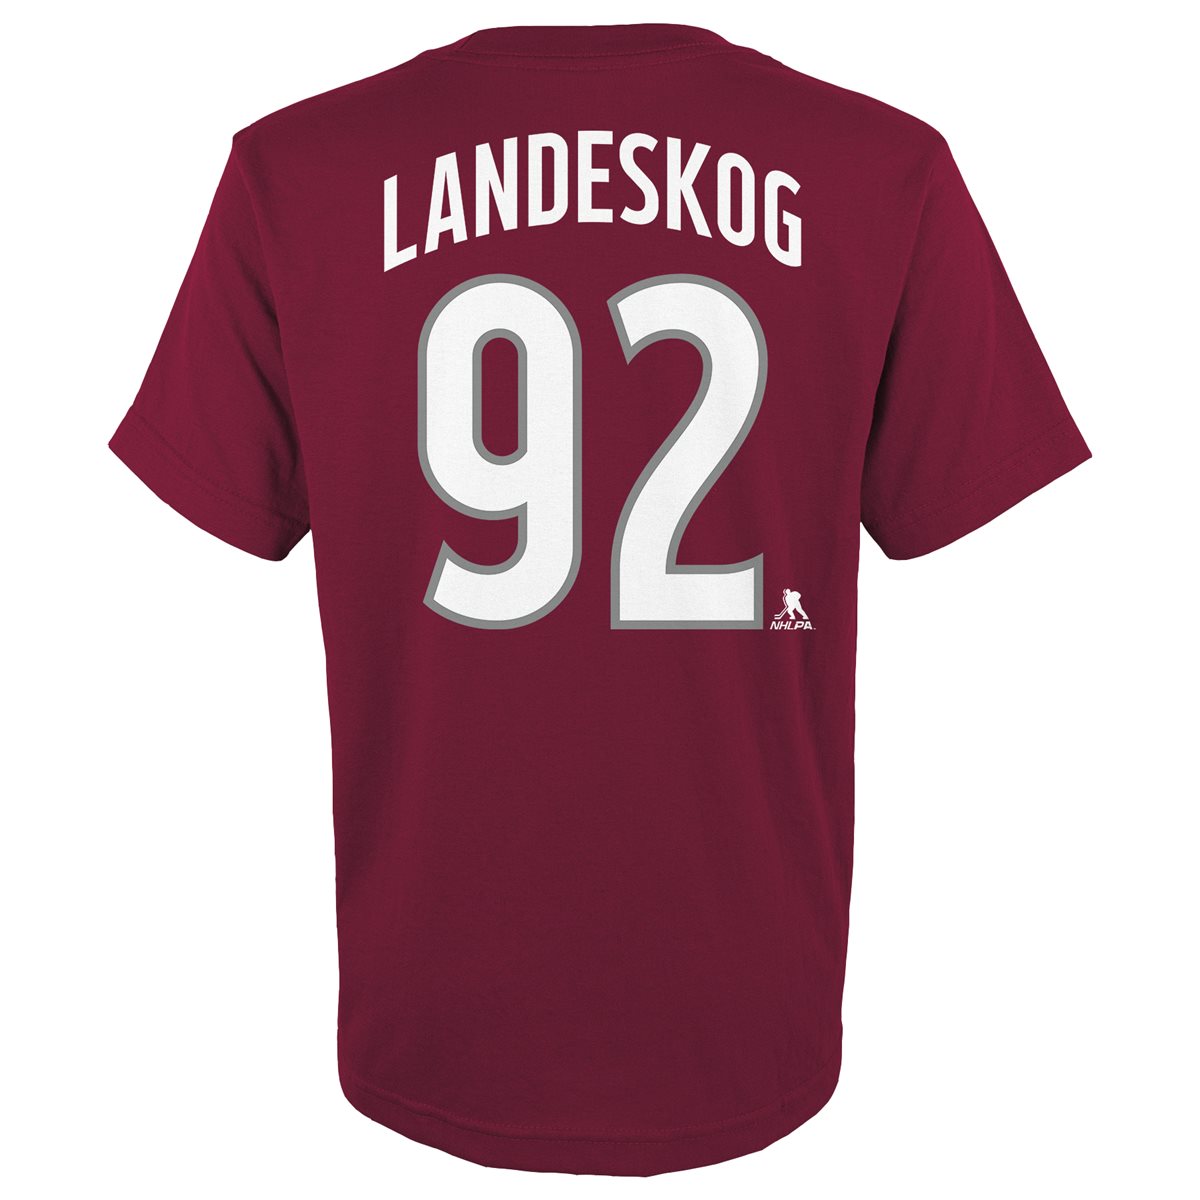 Gabriel Landeskog Jerseys, Gabriel Landeskog T-Shirts, Gear